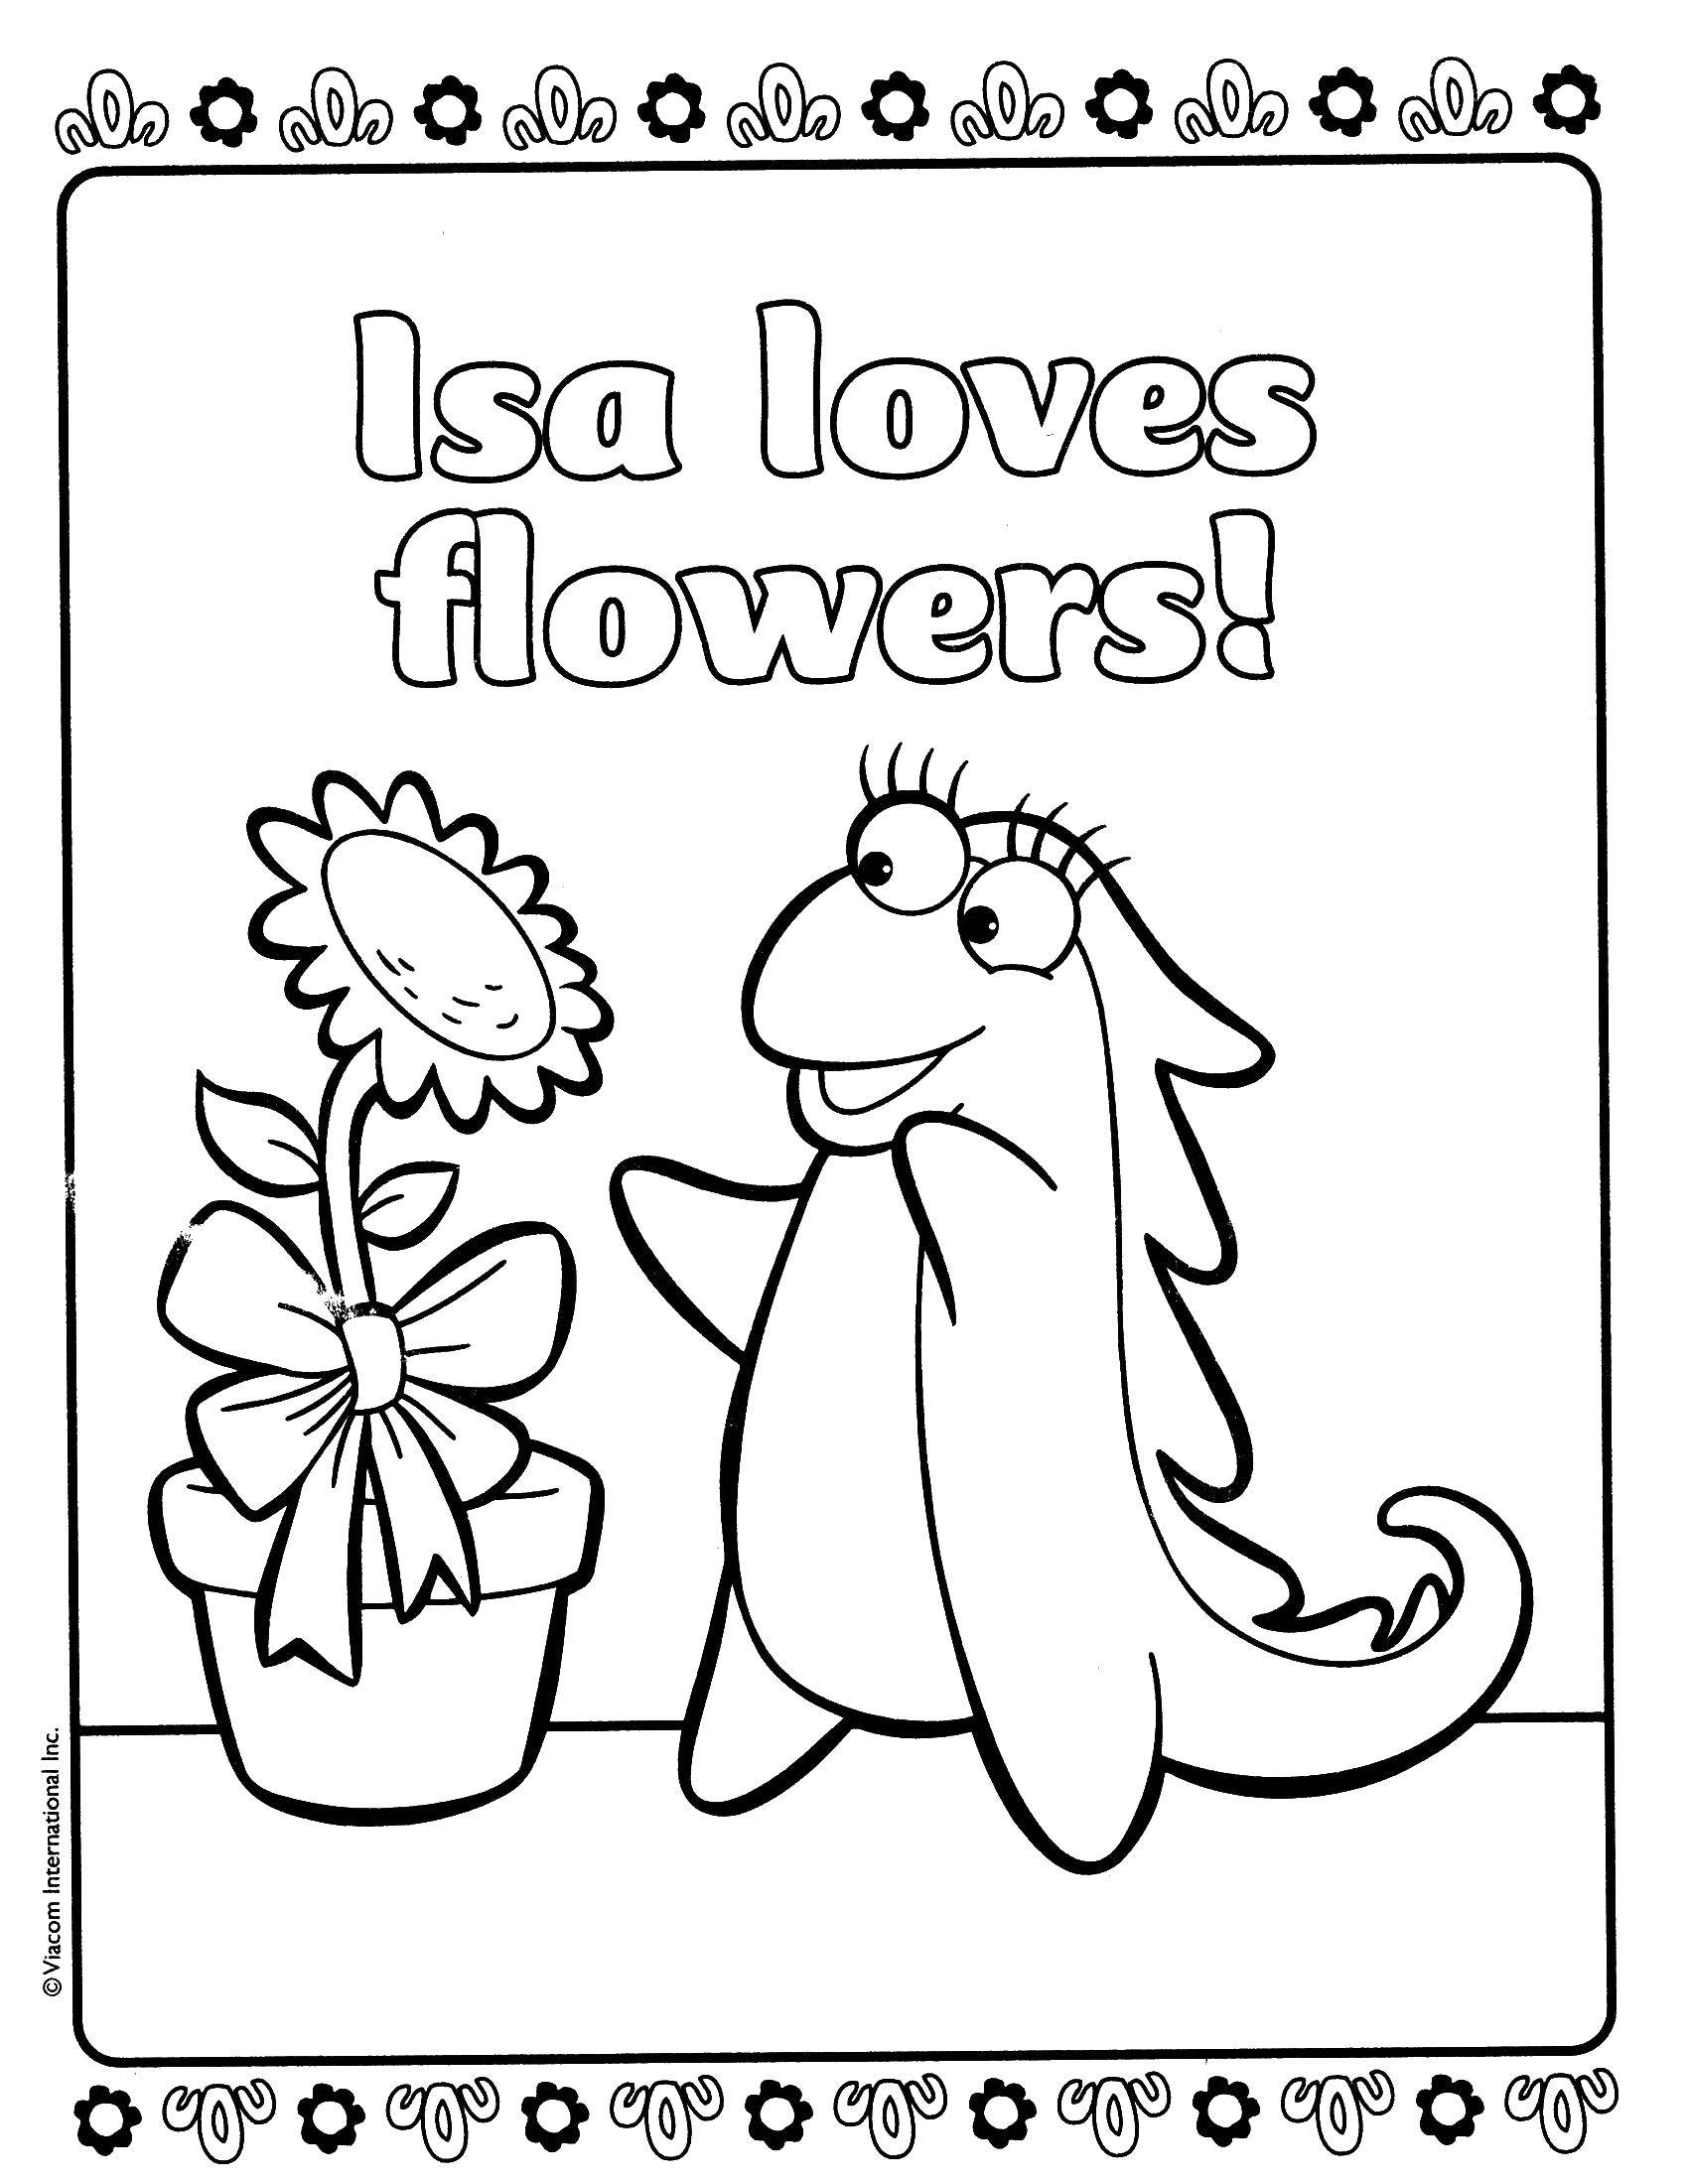 Название: Раскраска Иса любит цветы!. Категория: даша путешественница. Теги: Персонаж из мультфильма.